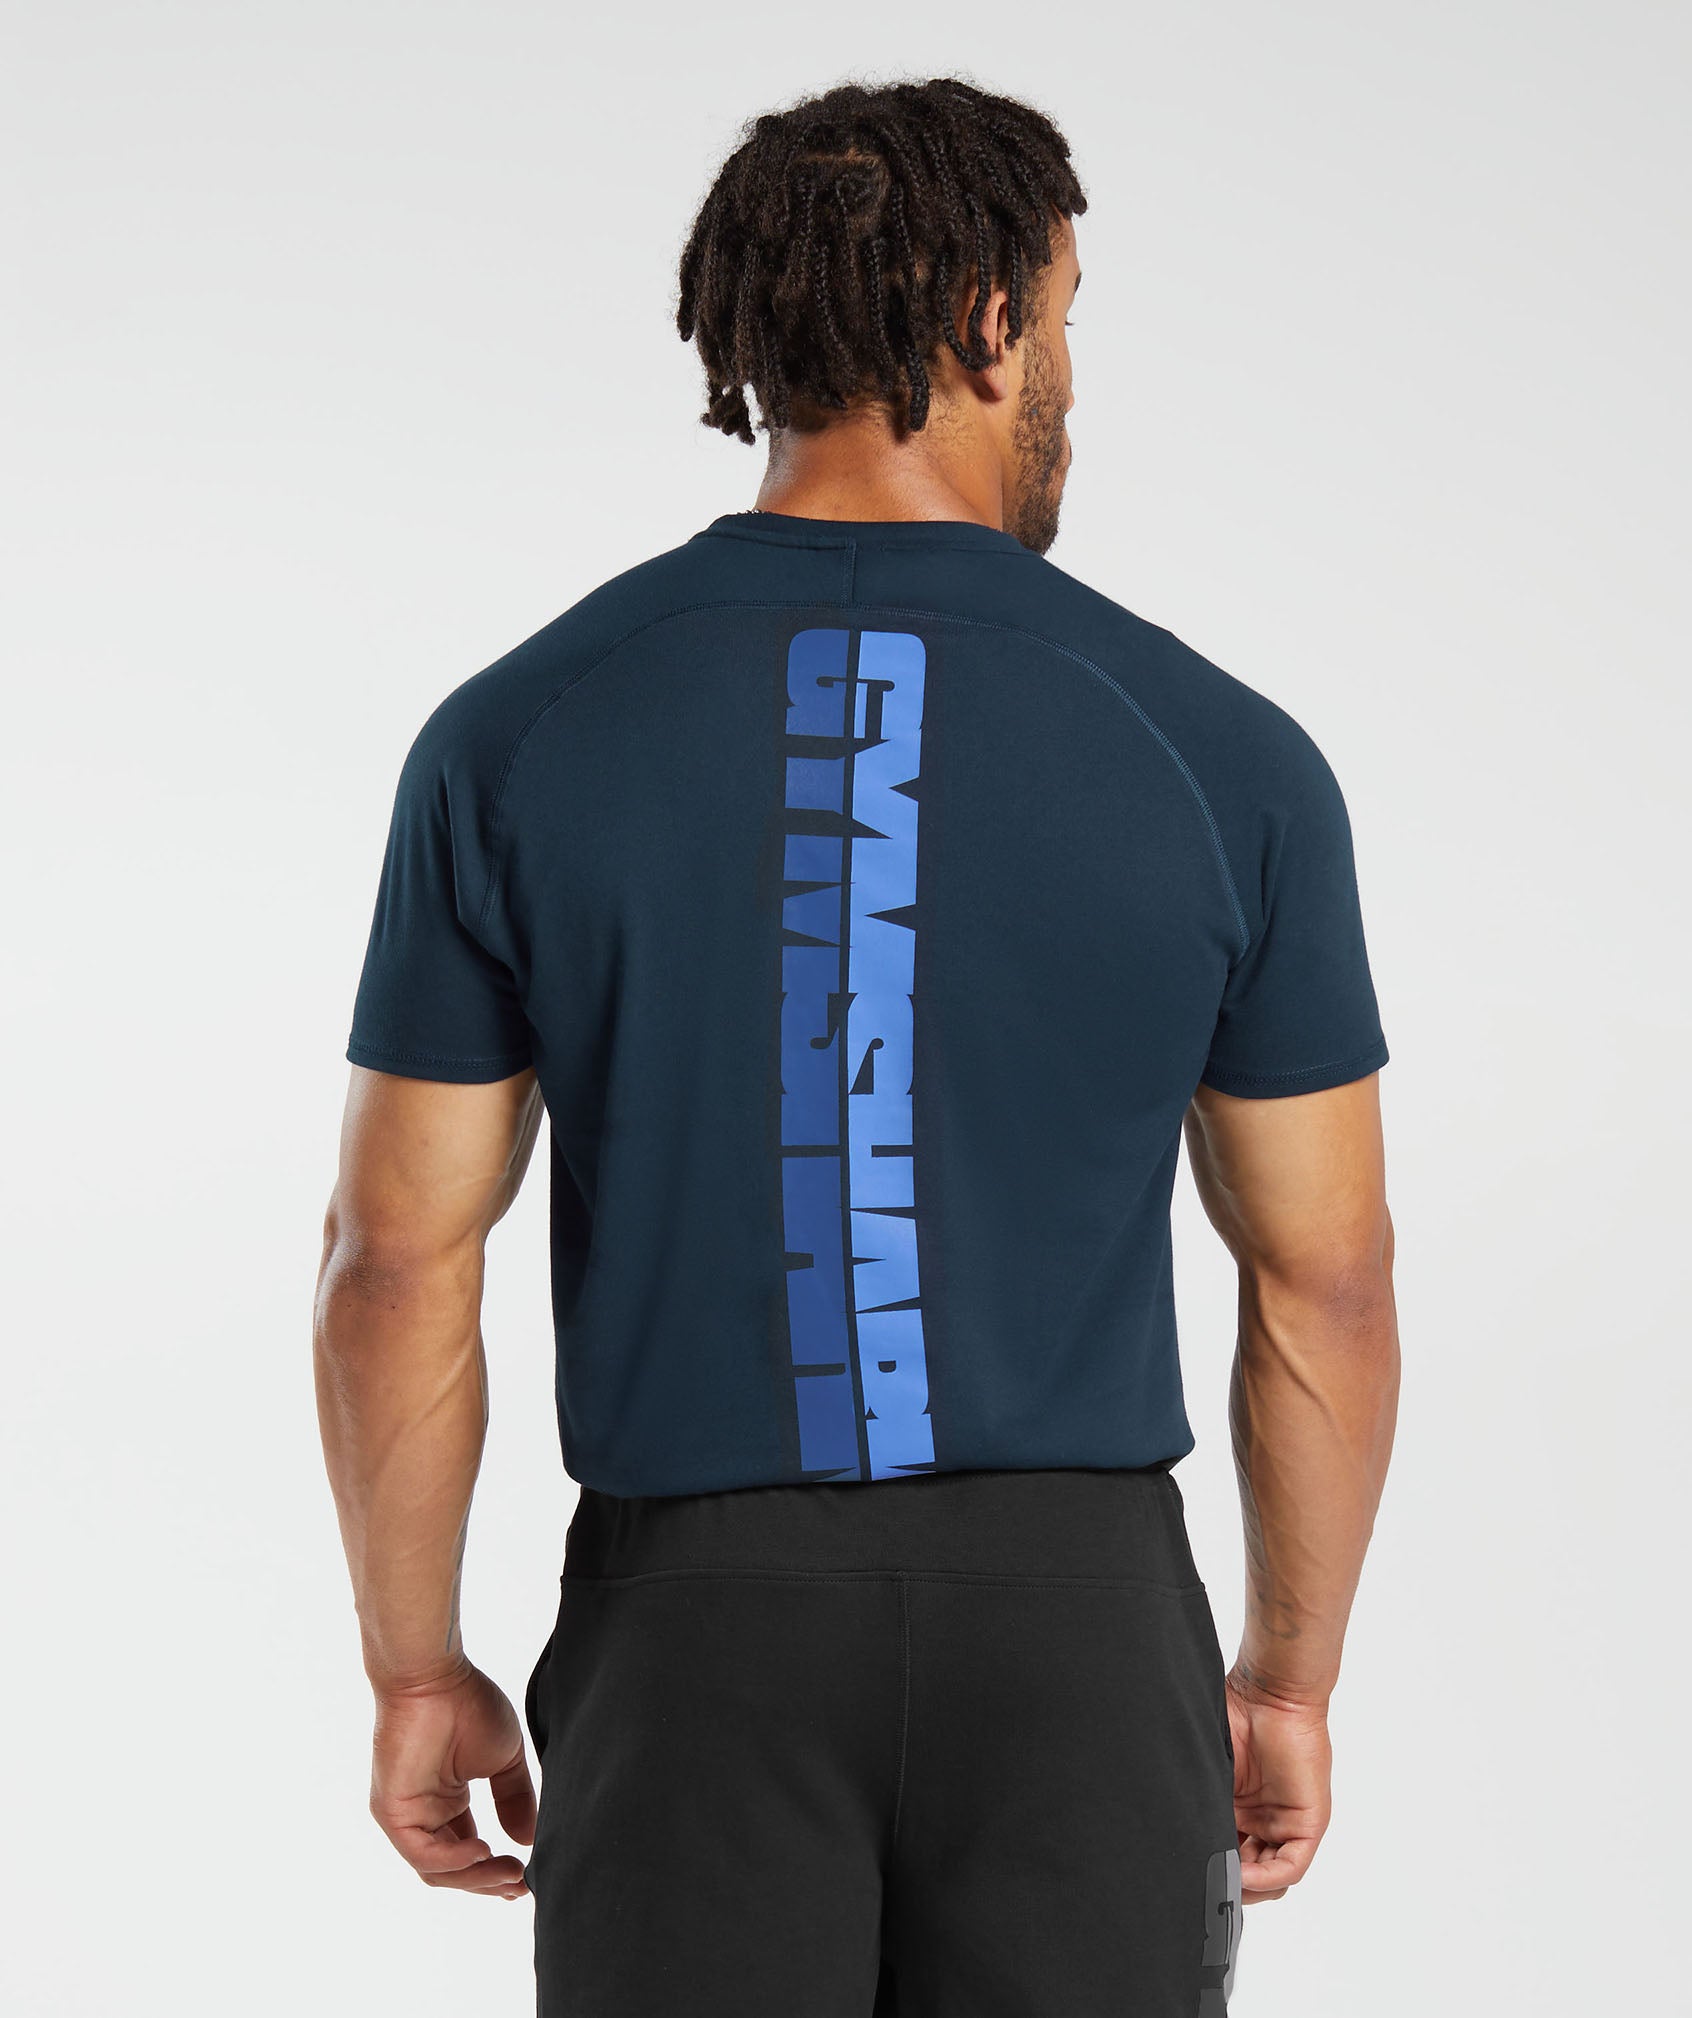 Gymshark Apex T-Shirt - Evening Blue/Drift Grey